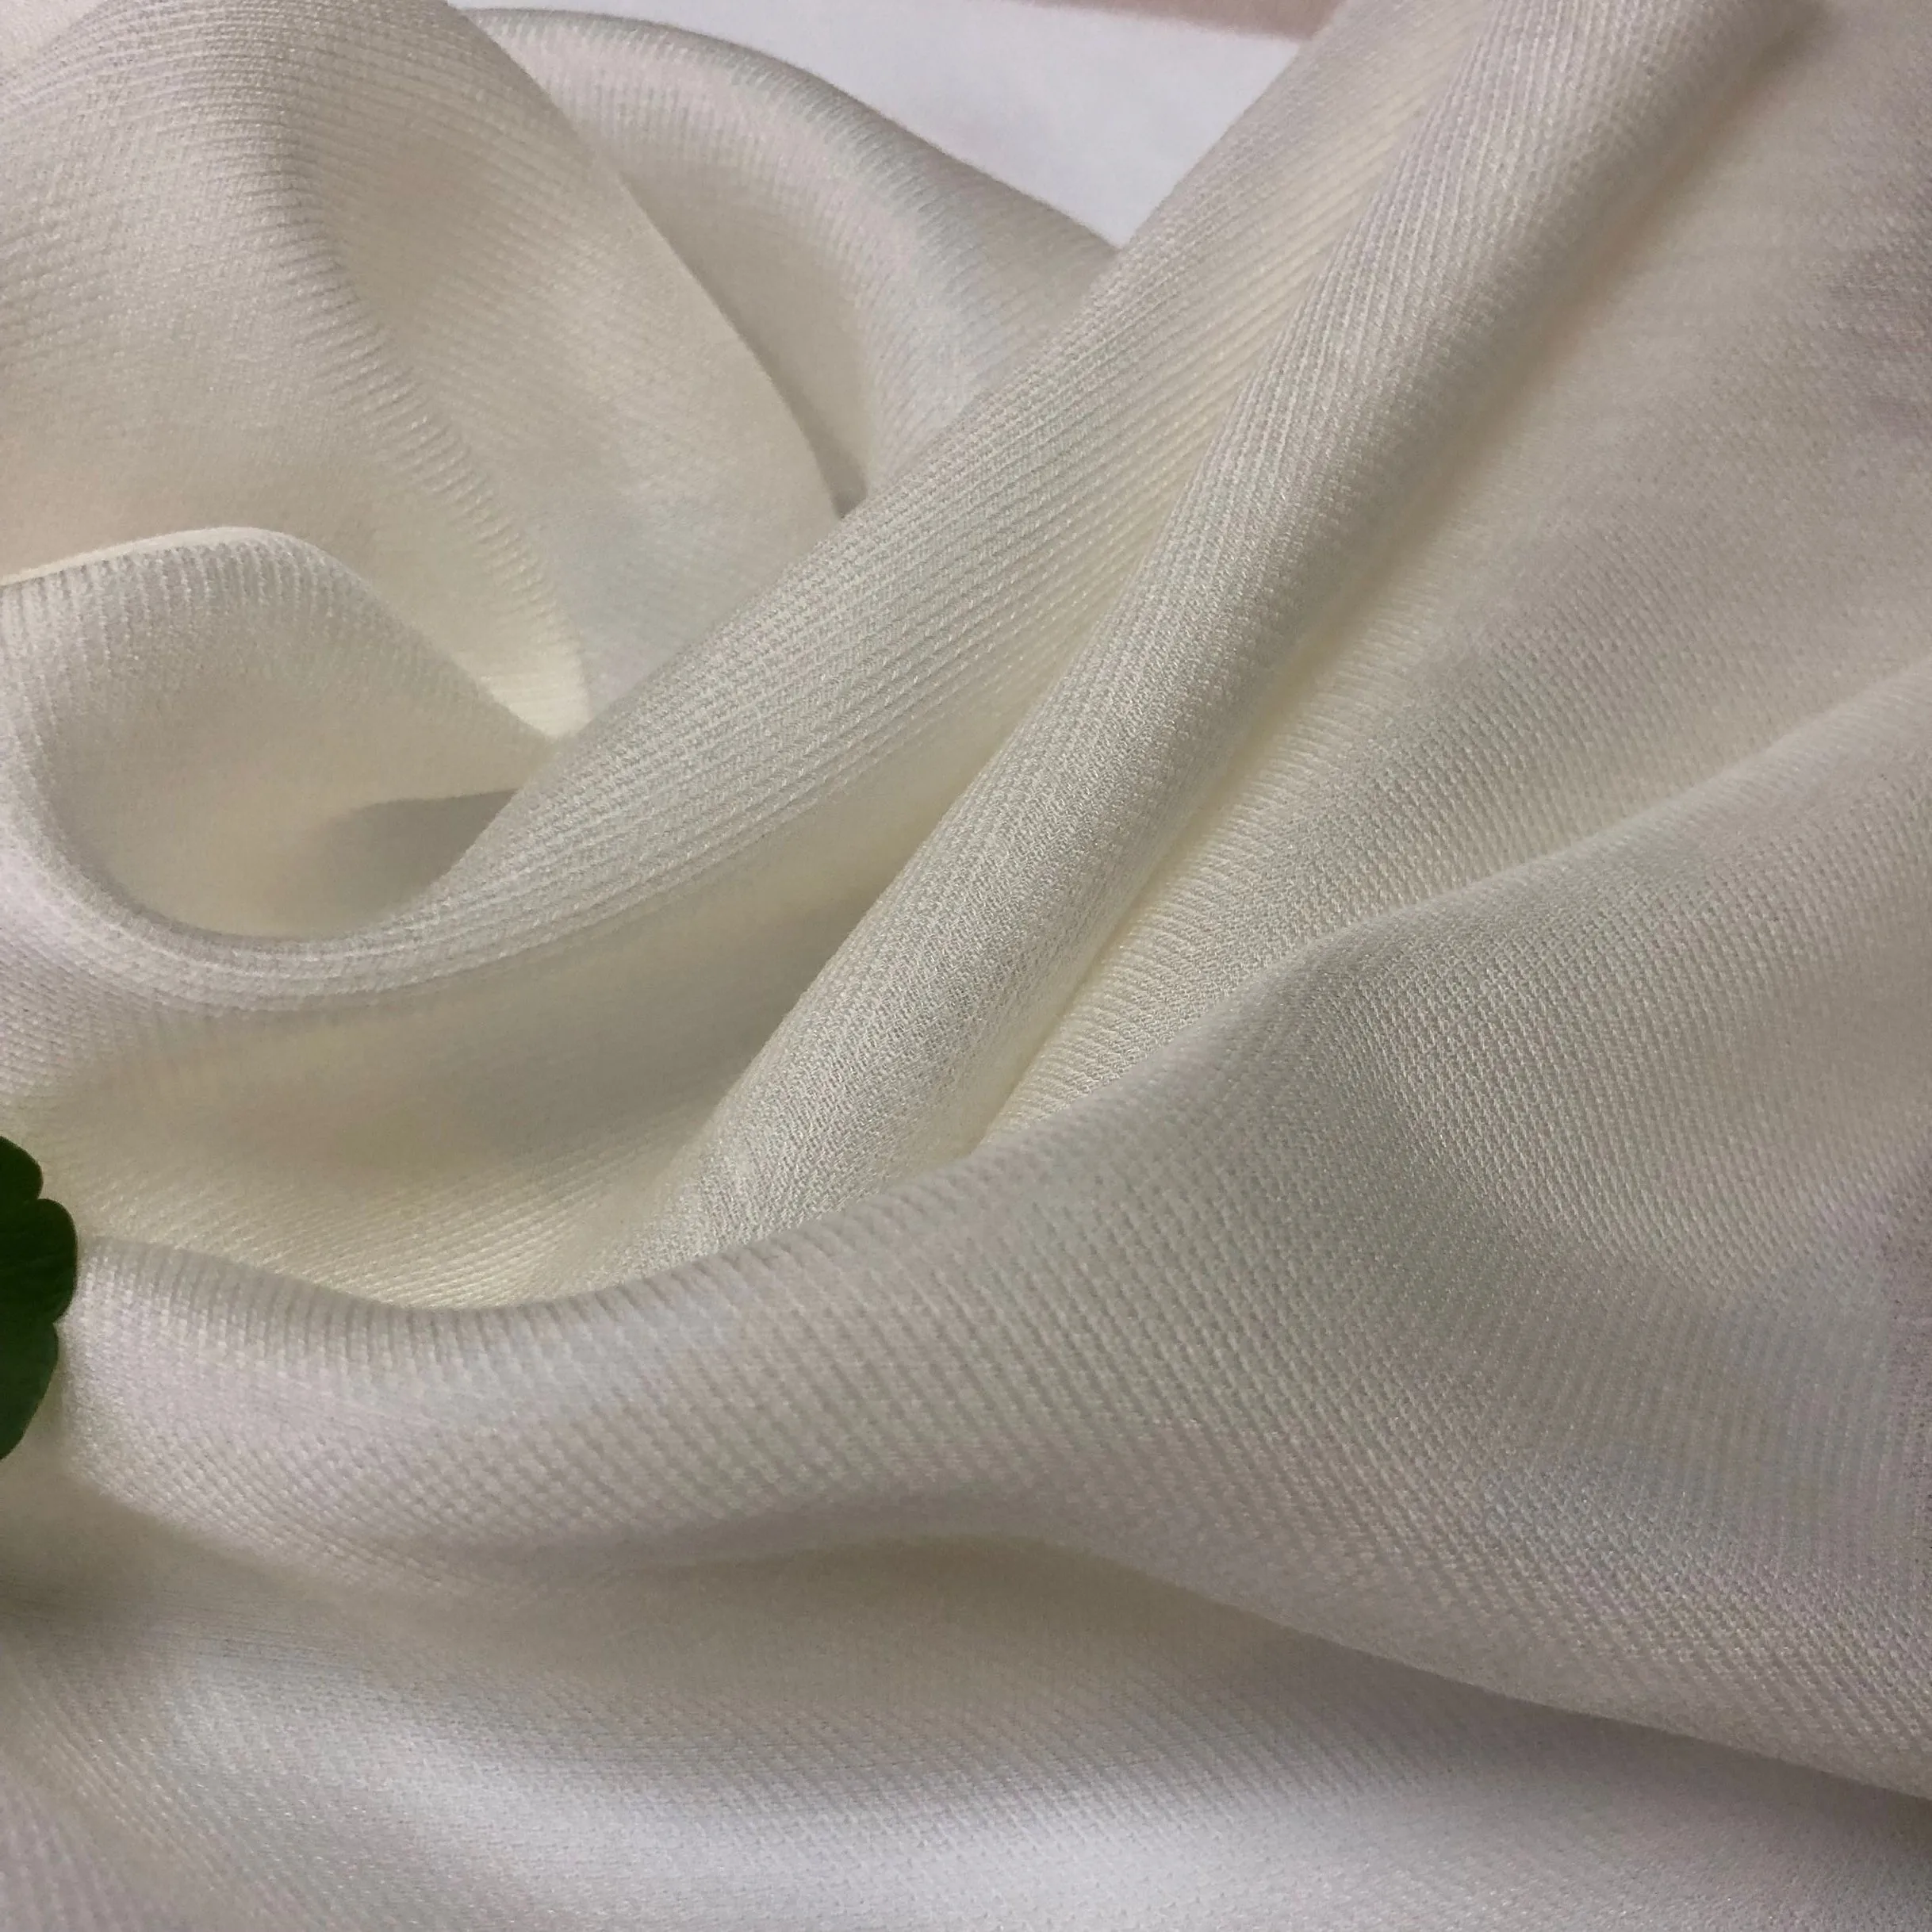 中国供应商天然白色丝绸斜纹羊毛面料丝绸混纺羊毛纺织品女装奢华